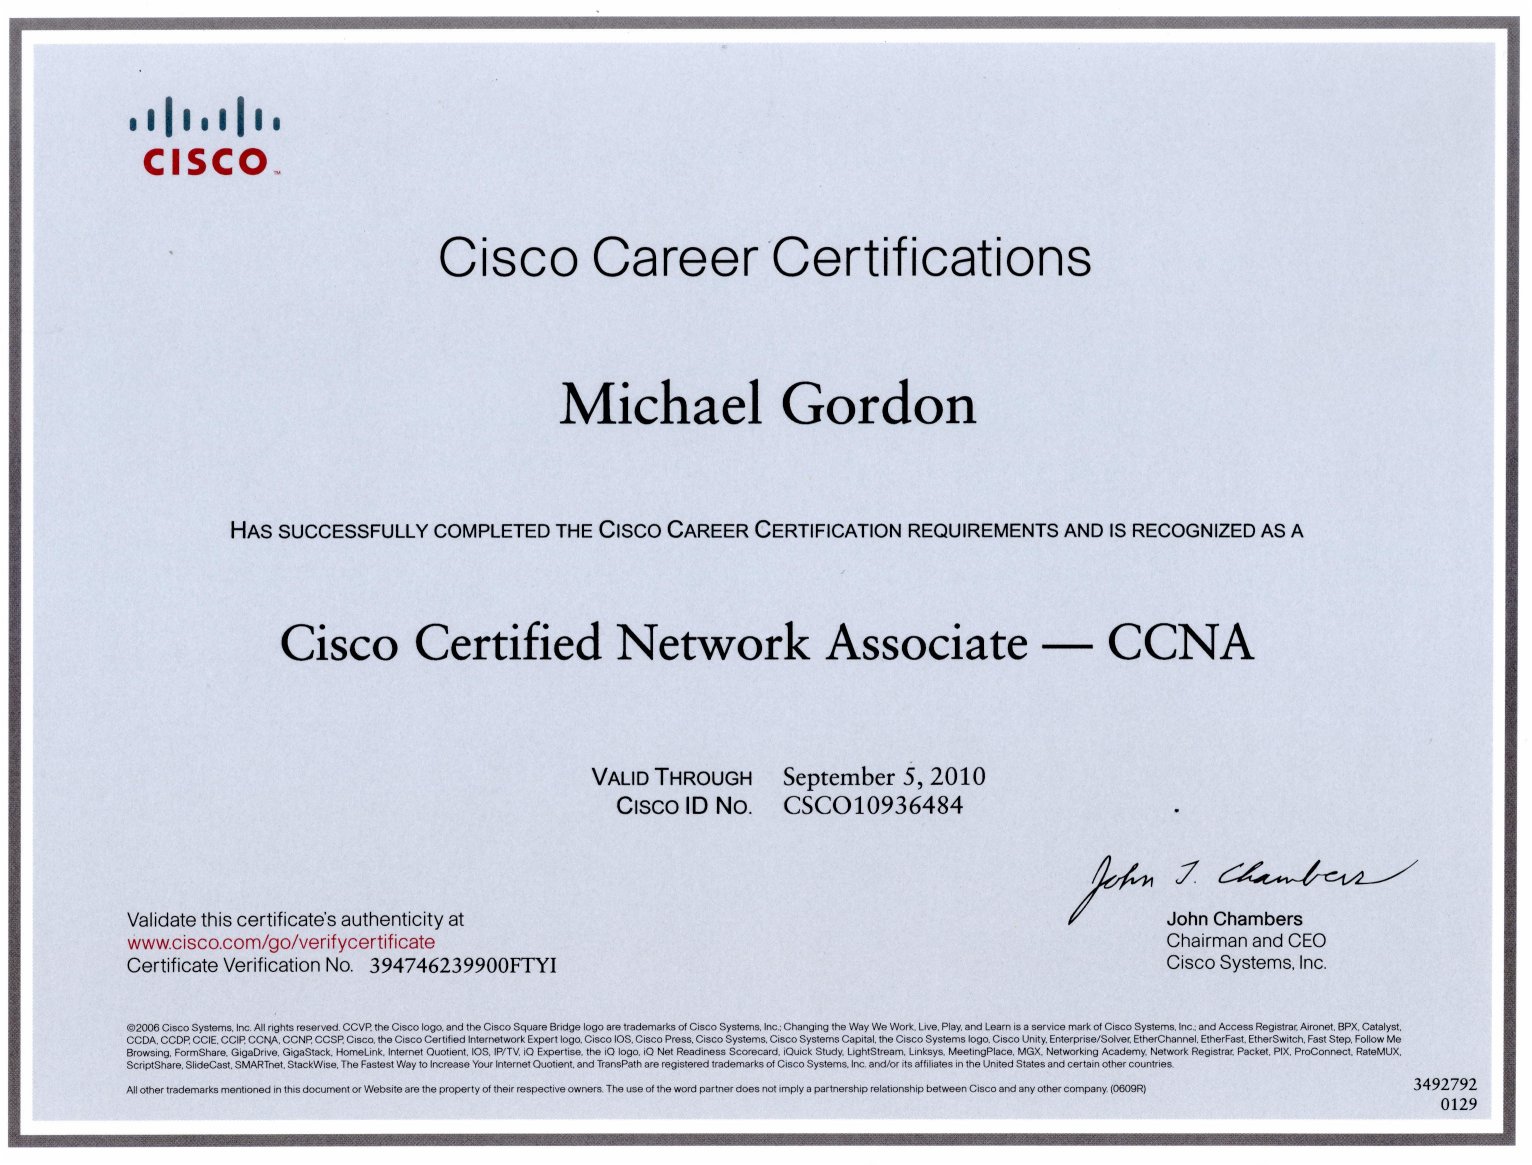 Cisco CCNA Certification Certificate